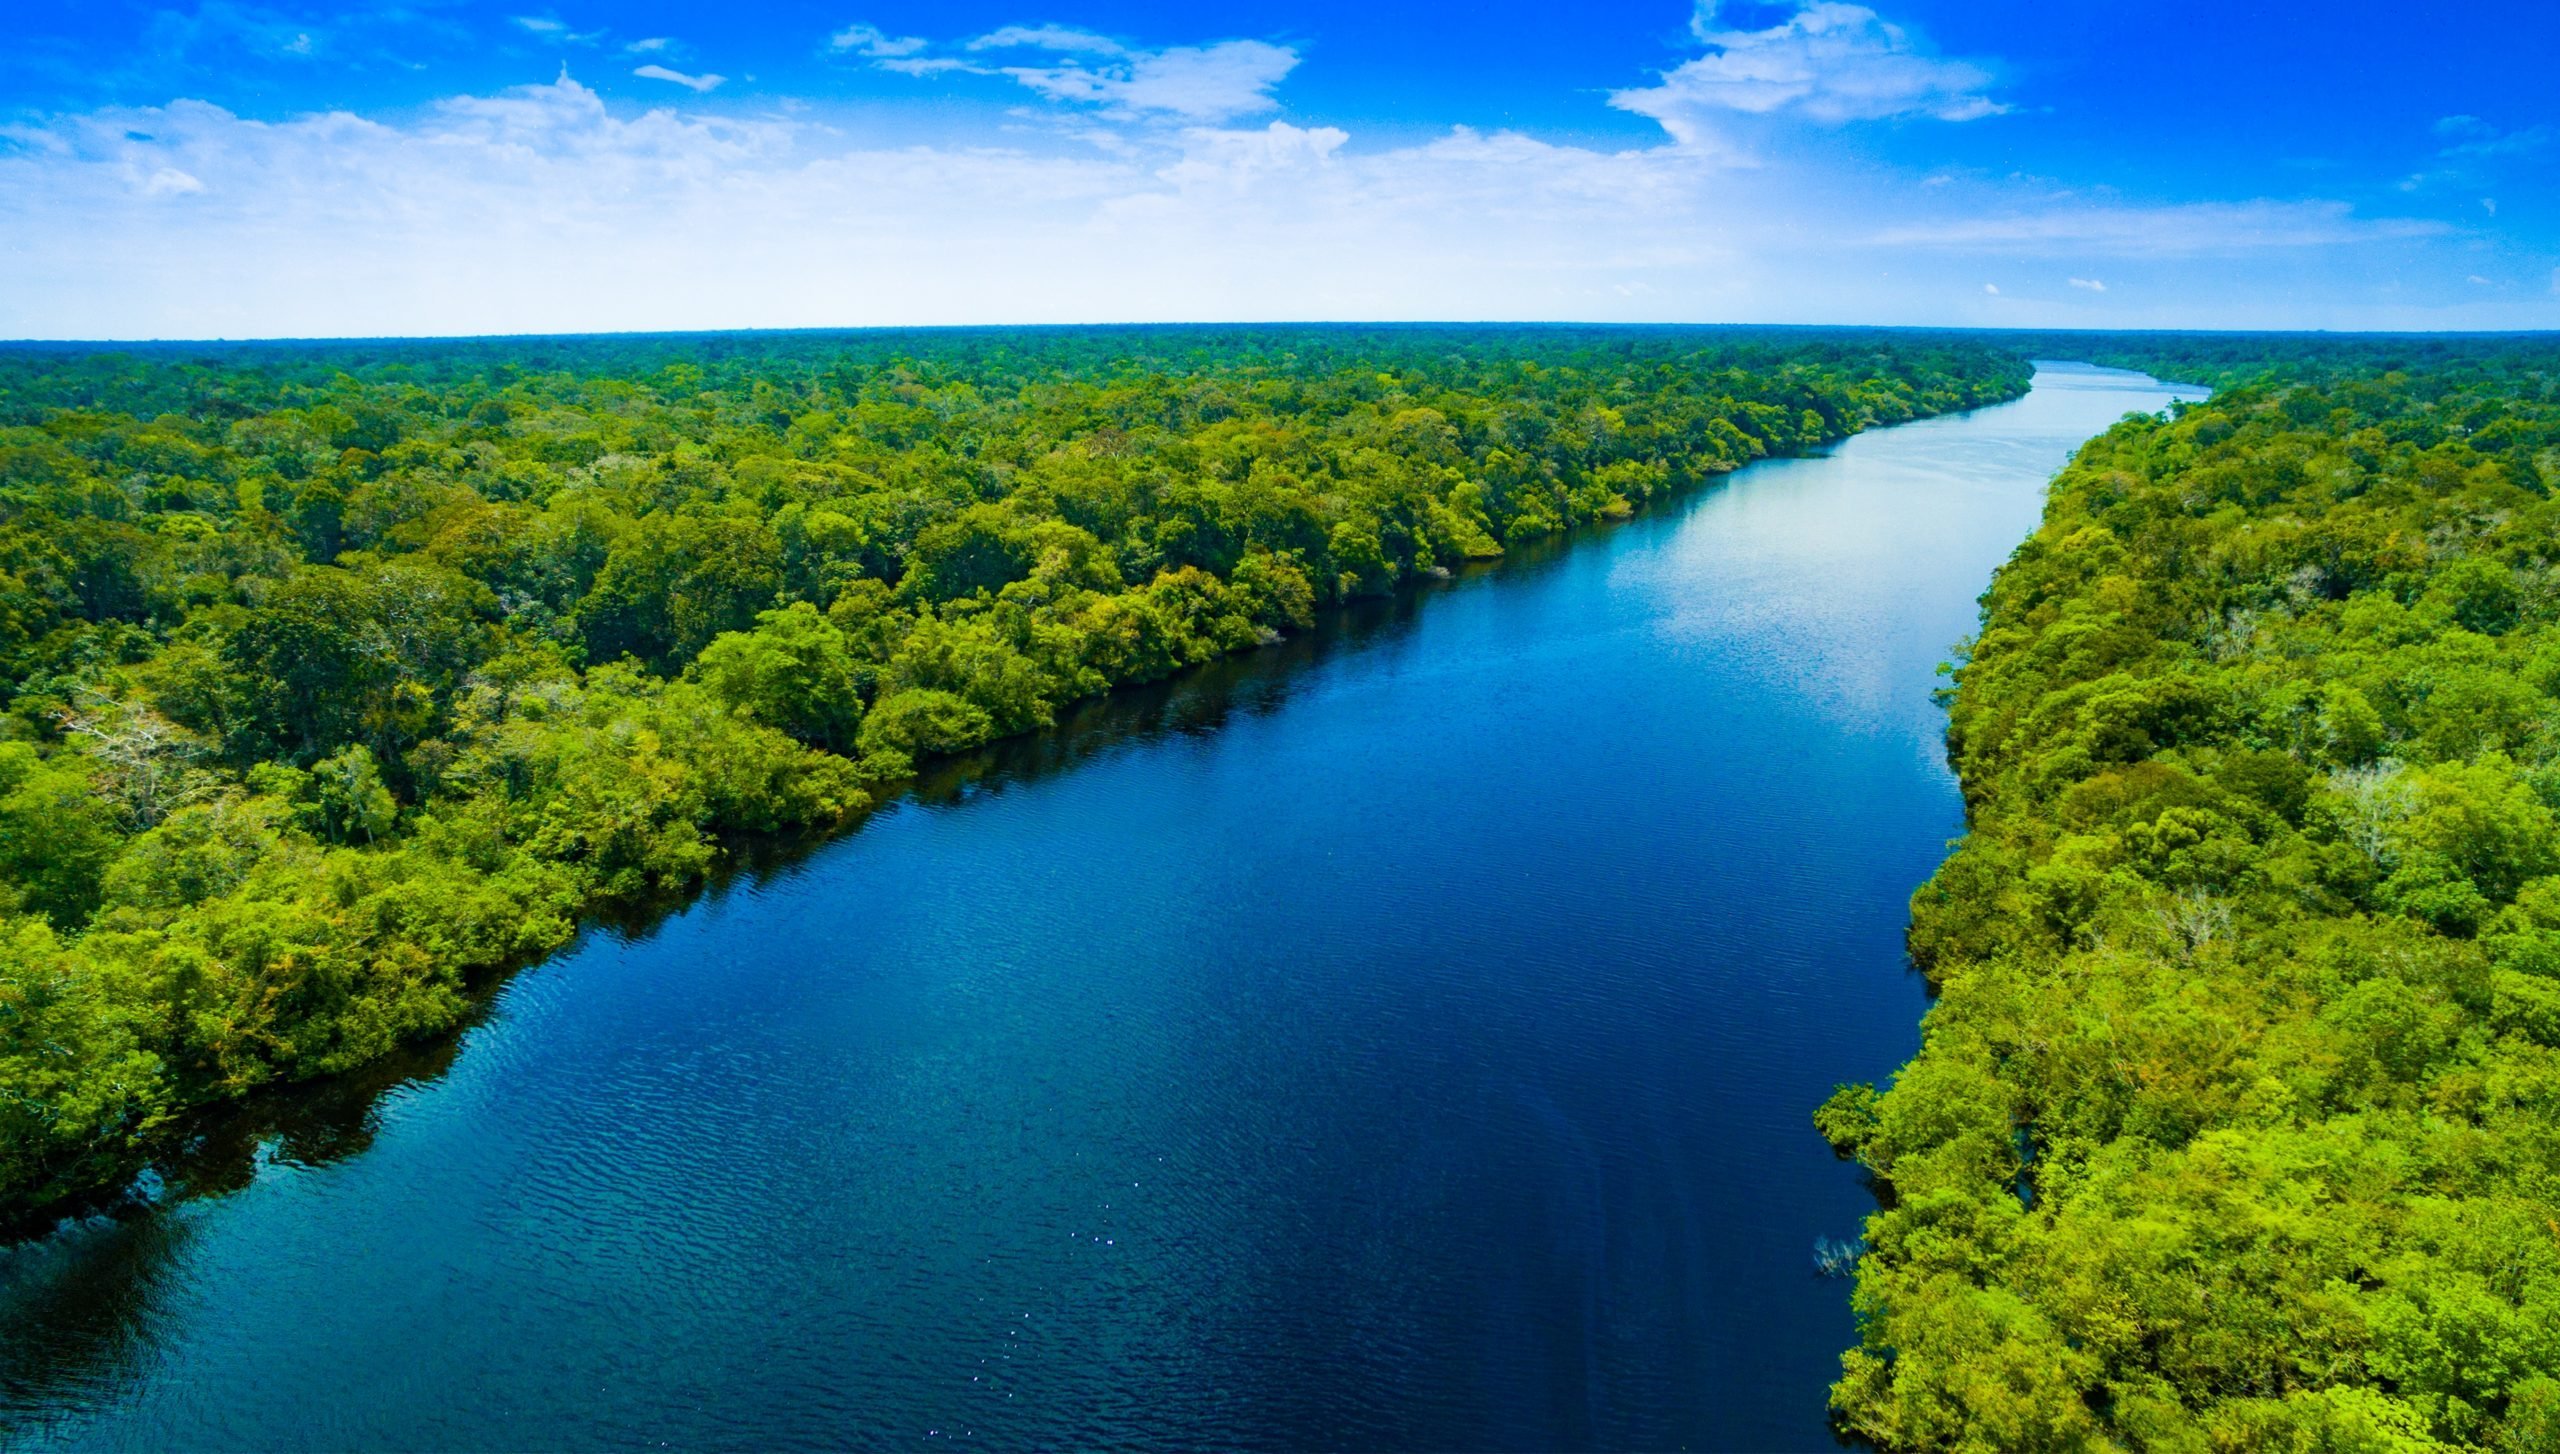 Реки полноводные весь год. Река Амазонка в Бразилии. Природа Бразилии Амазонка. Река Амазонка фото. Амазония Южная Америка.